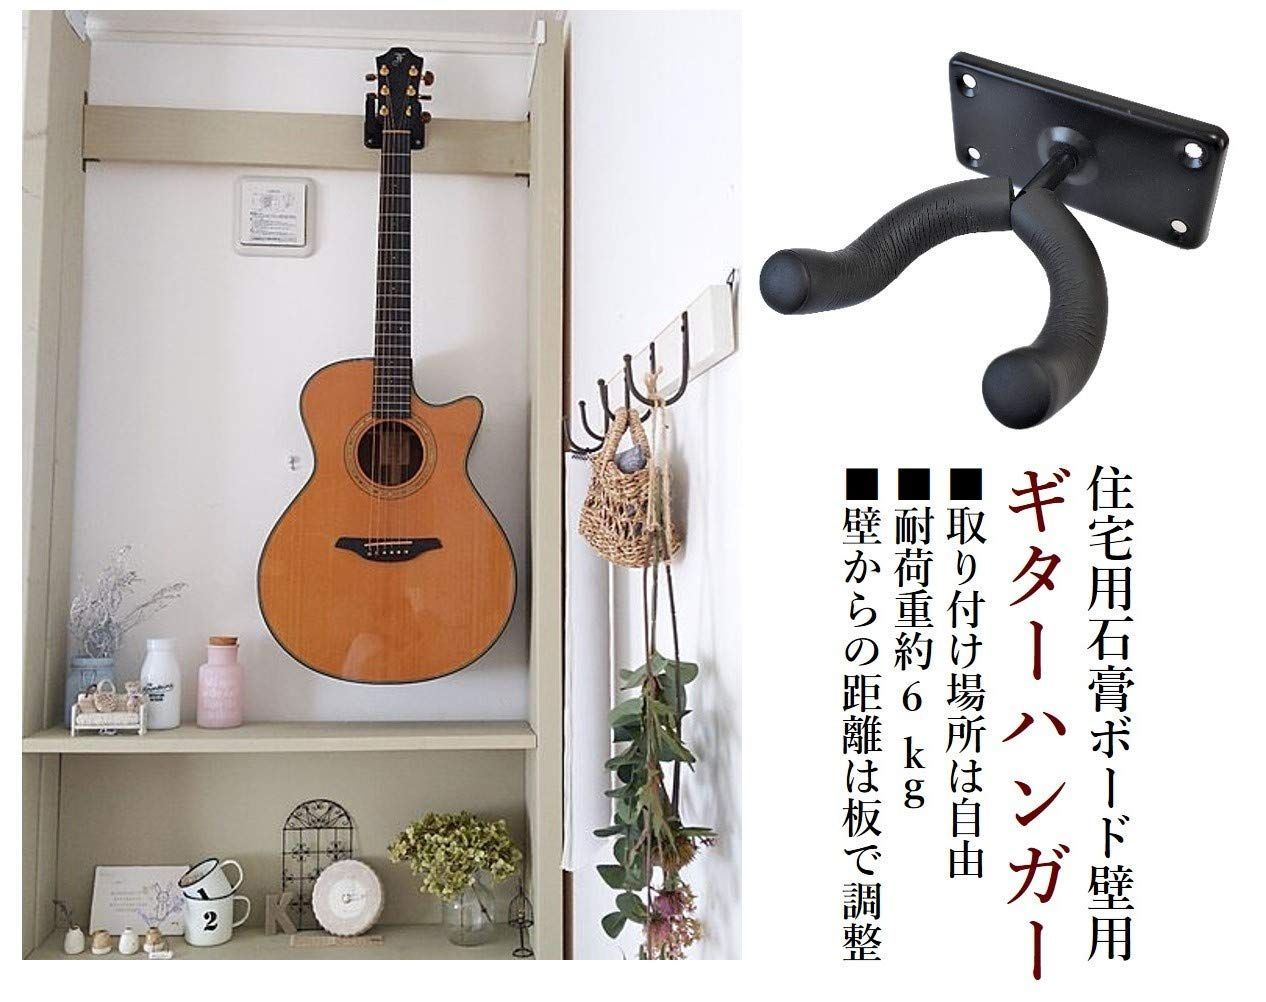 ◇ ギターハンガー 壁掛け ギタースタンド フックホルダー アコギ - その他